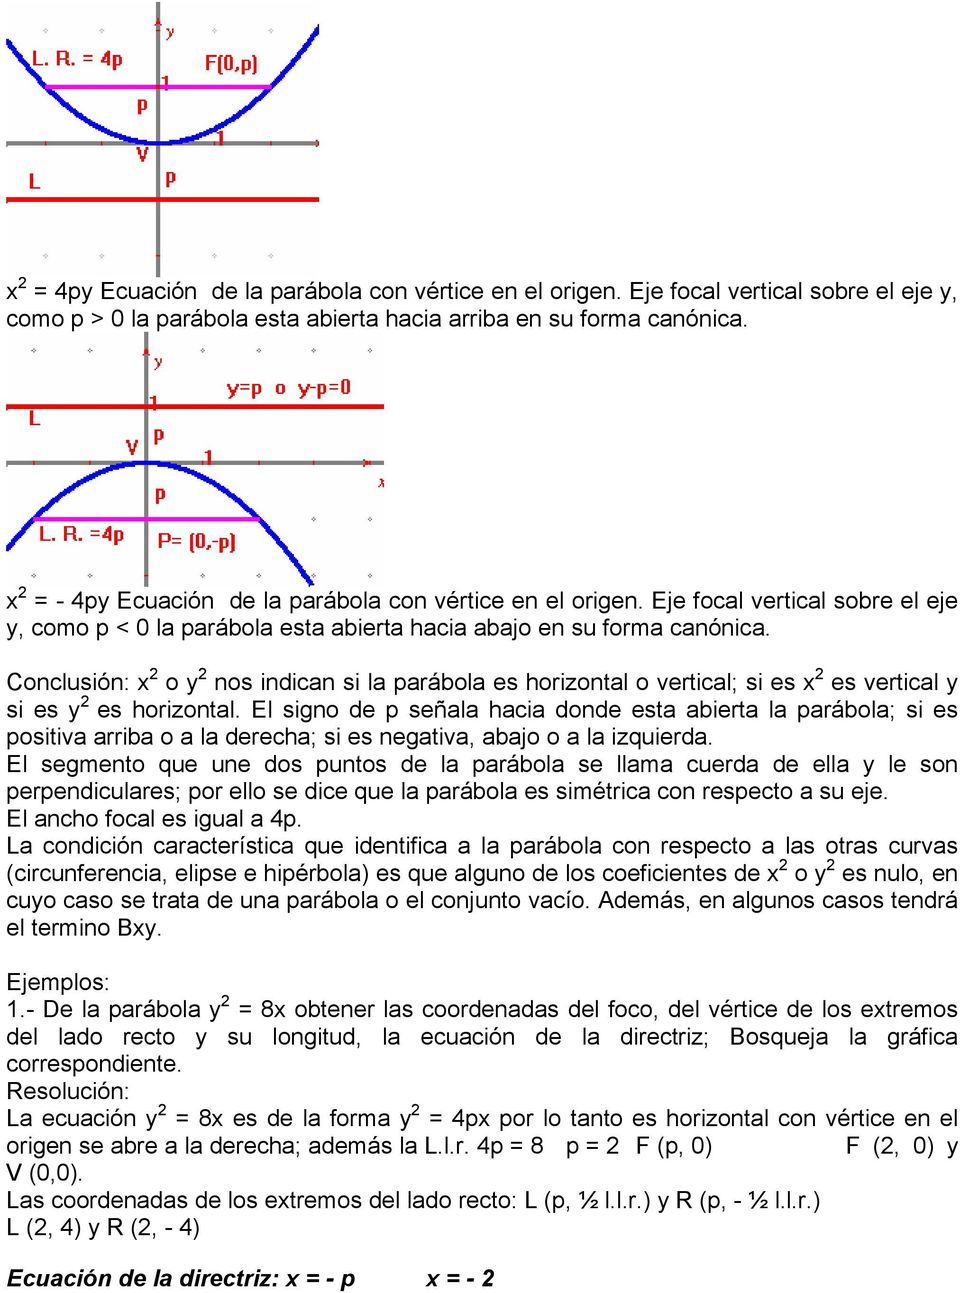 Conclusión: x o y nos indican si la parábola es horizontal o vertical; si es x es vertical y si es y es horizontal.